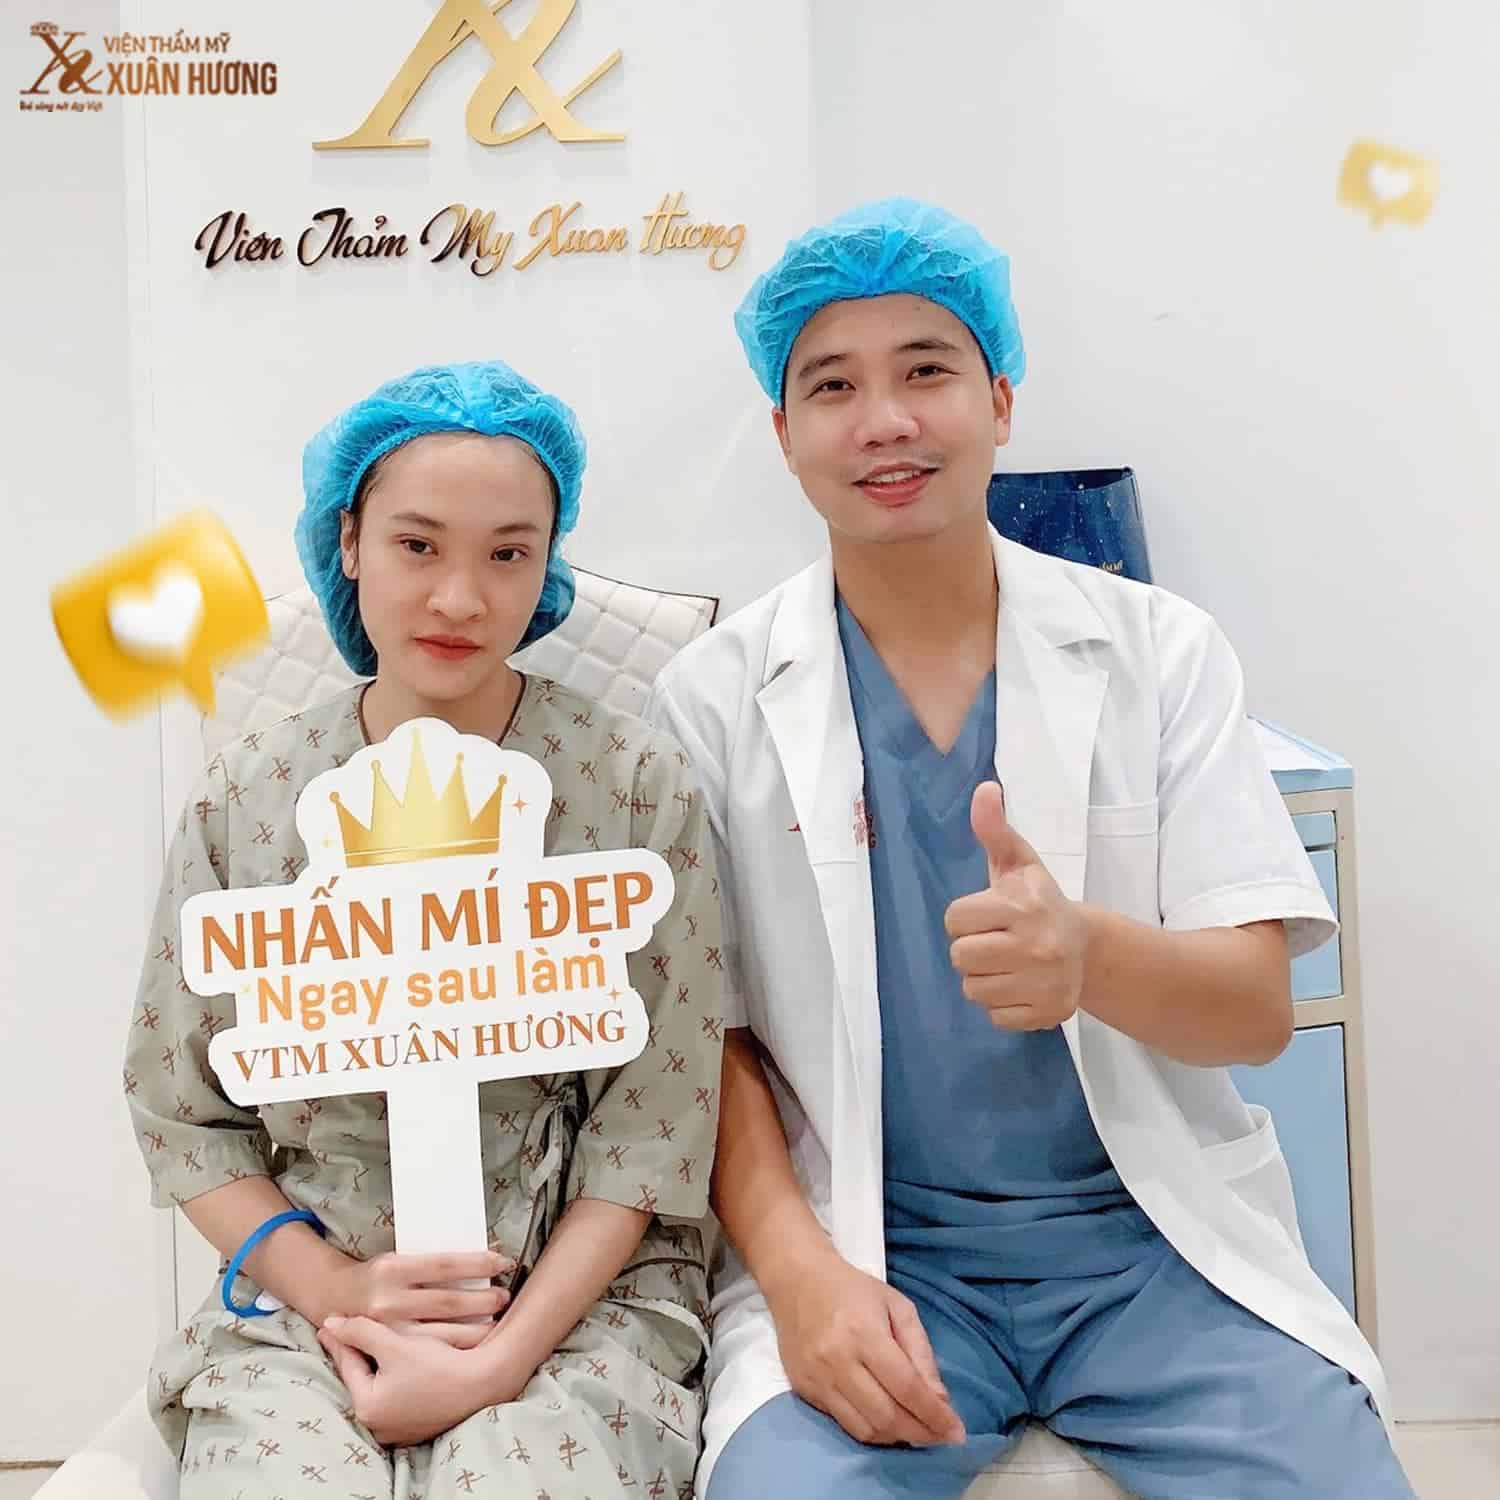 Bác sĩ Nguyễn Đình Quang chuyên gia cắt mí